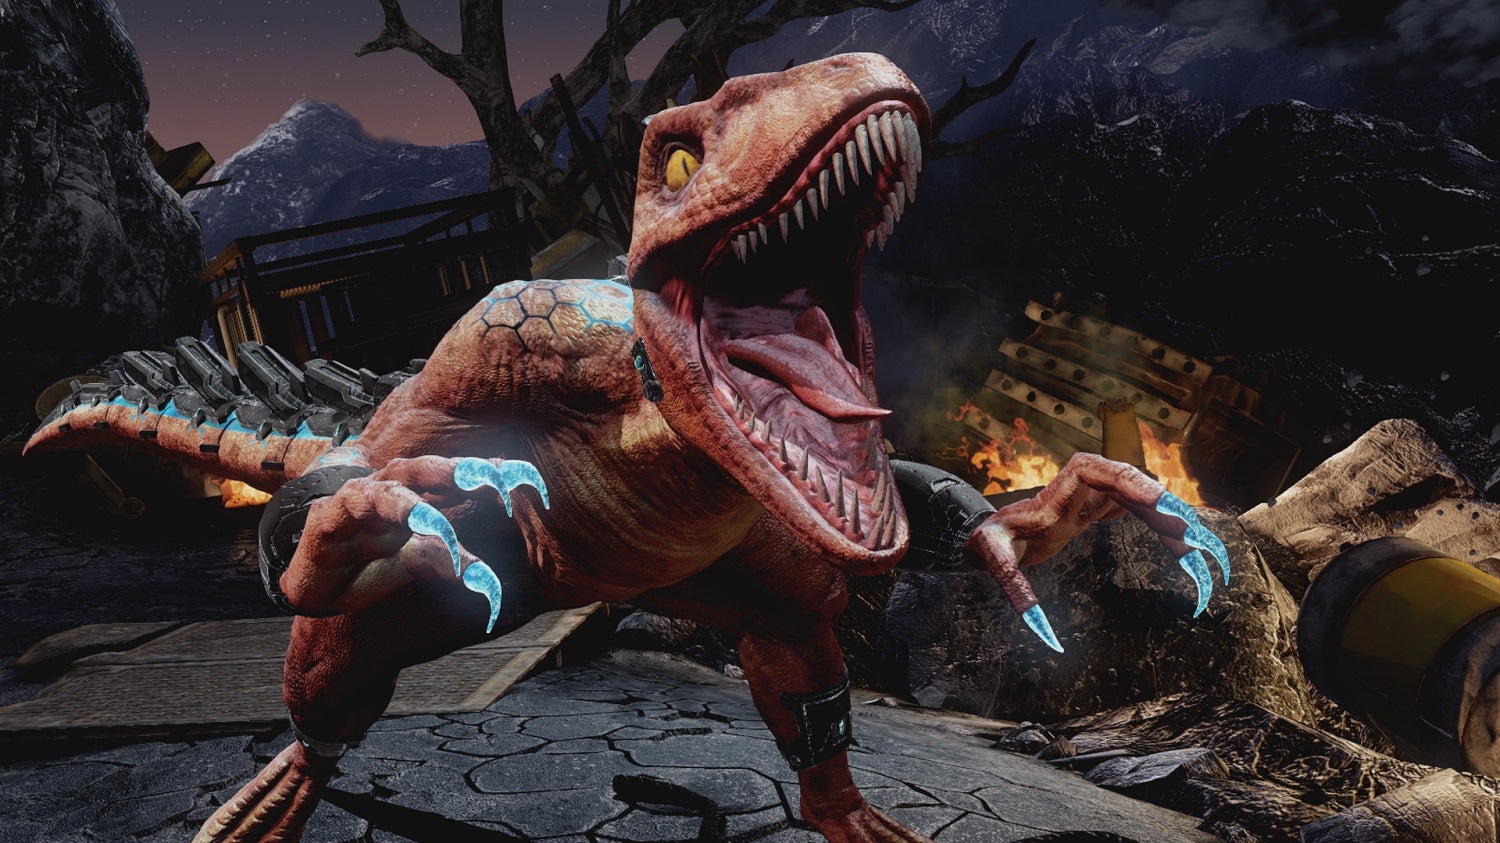 Obrazki dla Robot-dinozaur Riptor kolejnym wojownikiem w bijatyce Killer Instinct